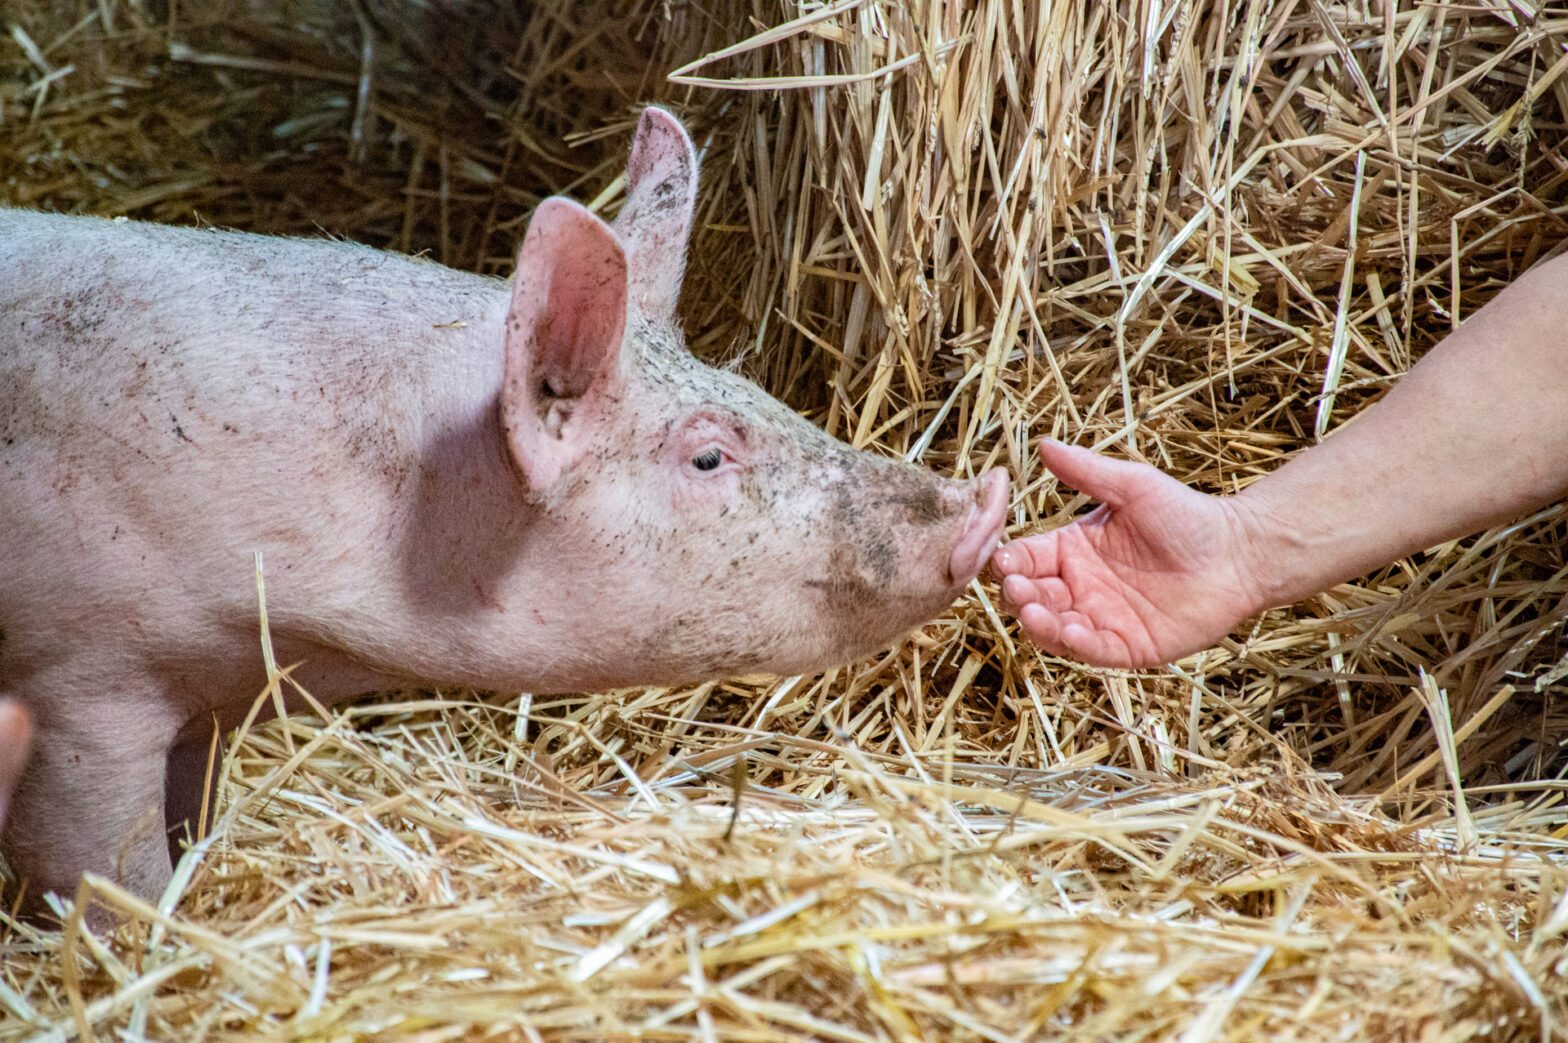 Bien-être animal : une opportunité pour la filière porcine ?